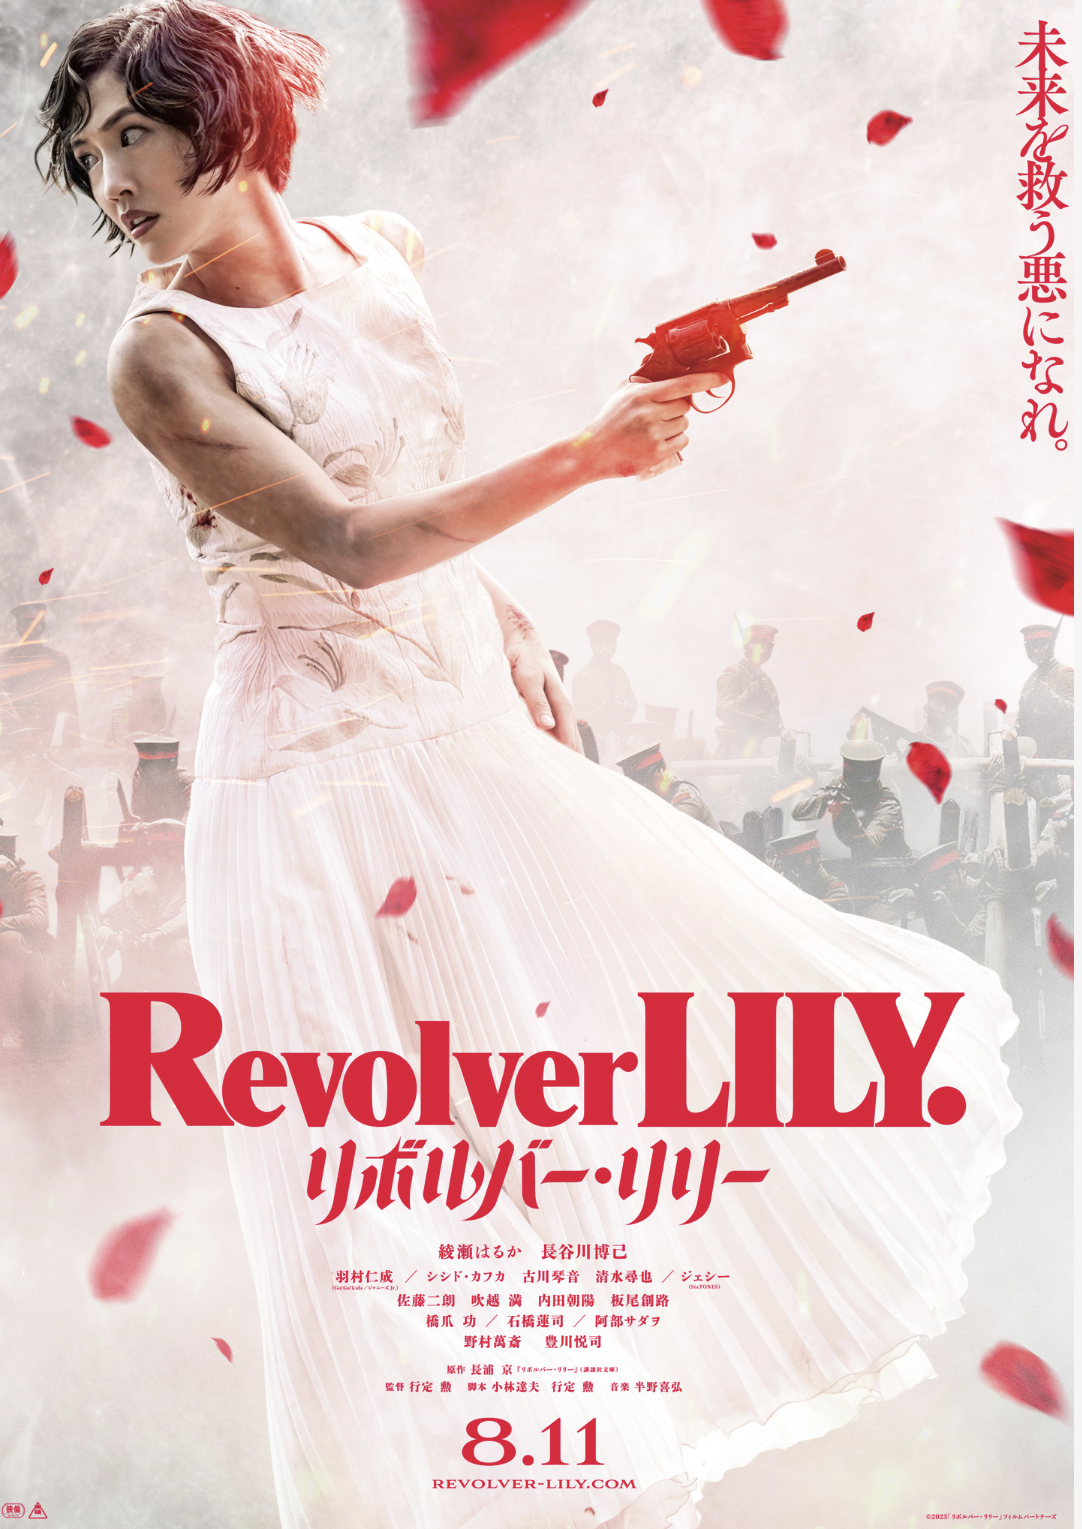 綾瀬はるか主演で、ハードボイルド作家・長浦京の代表作「リボルバー・リリー」を映画化したアクションサスペンス。